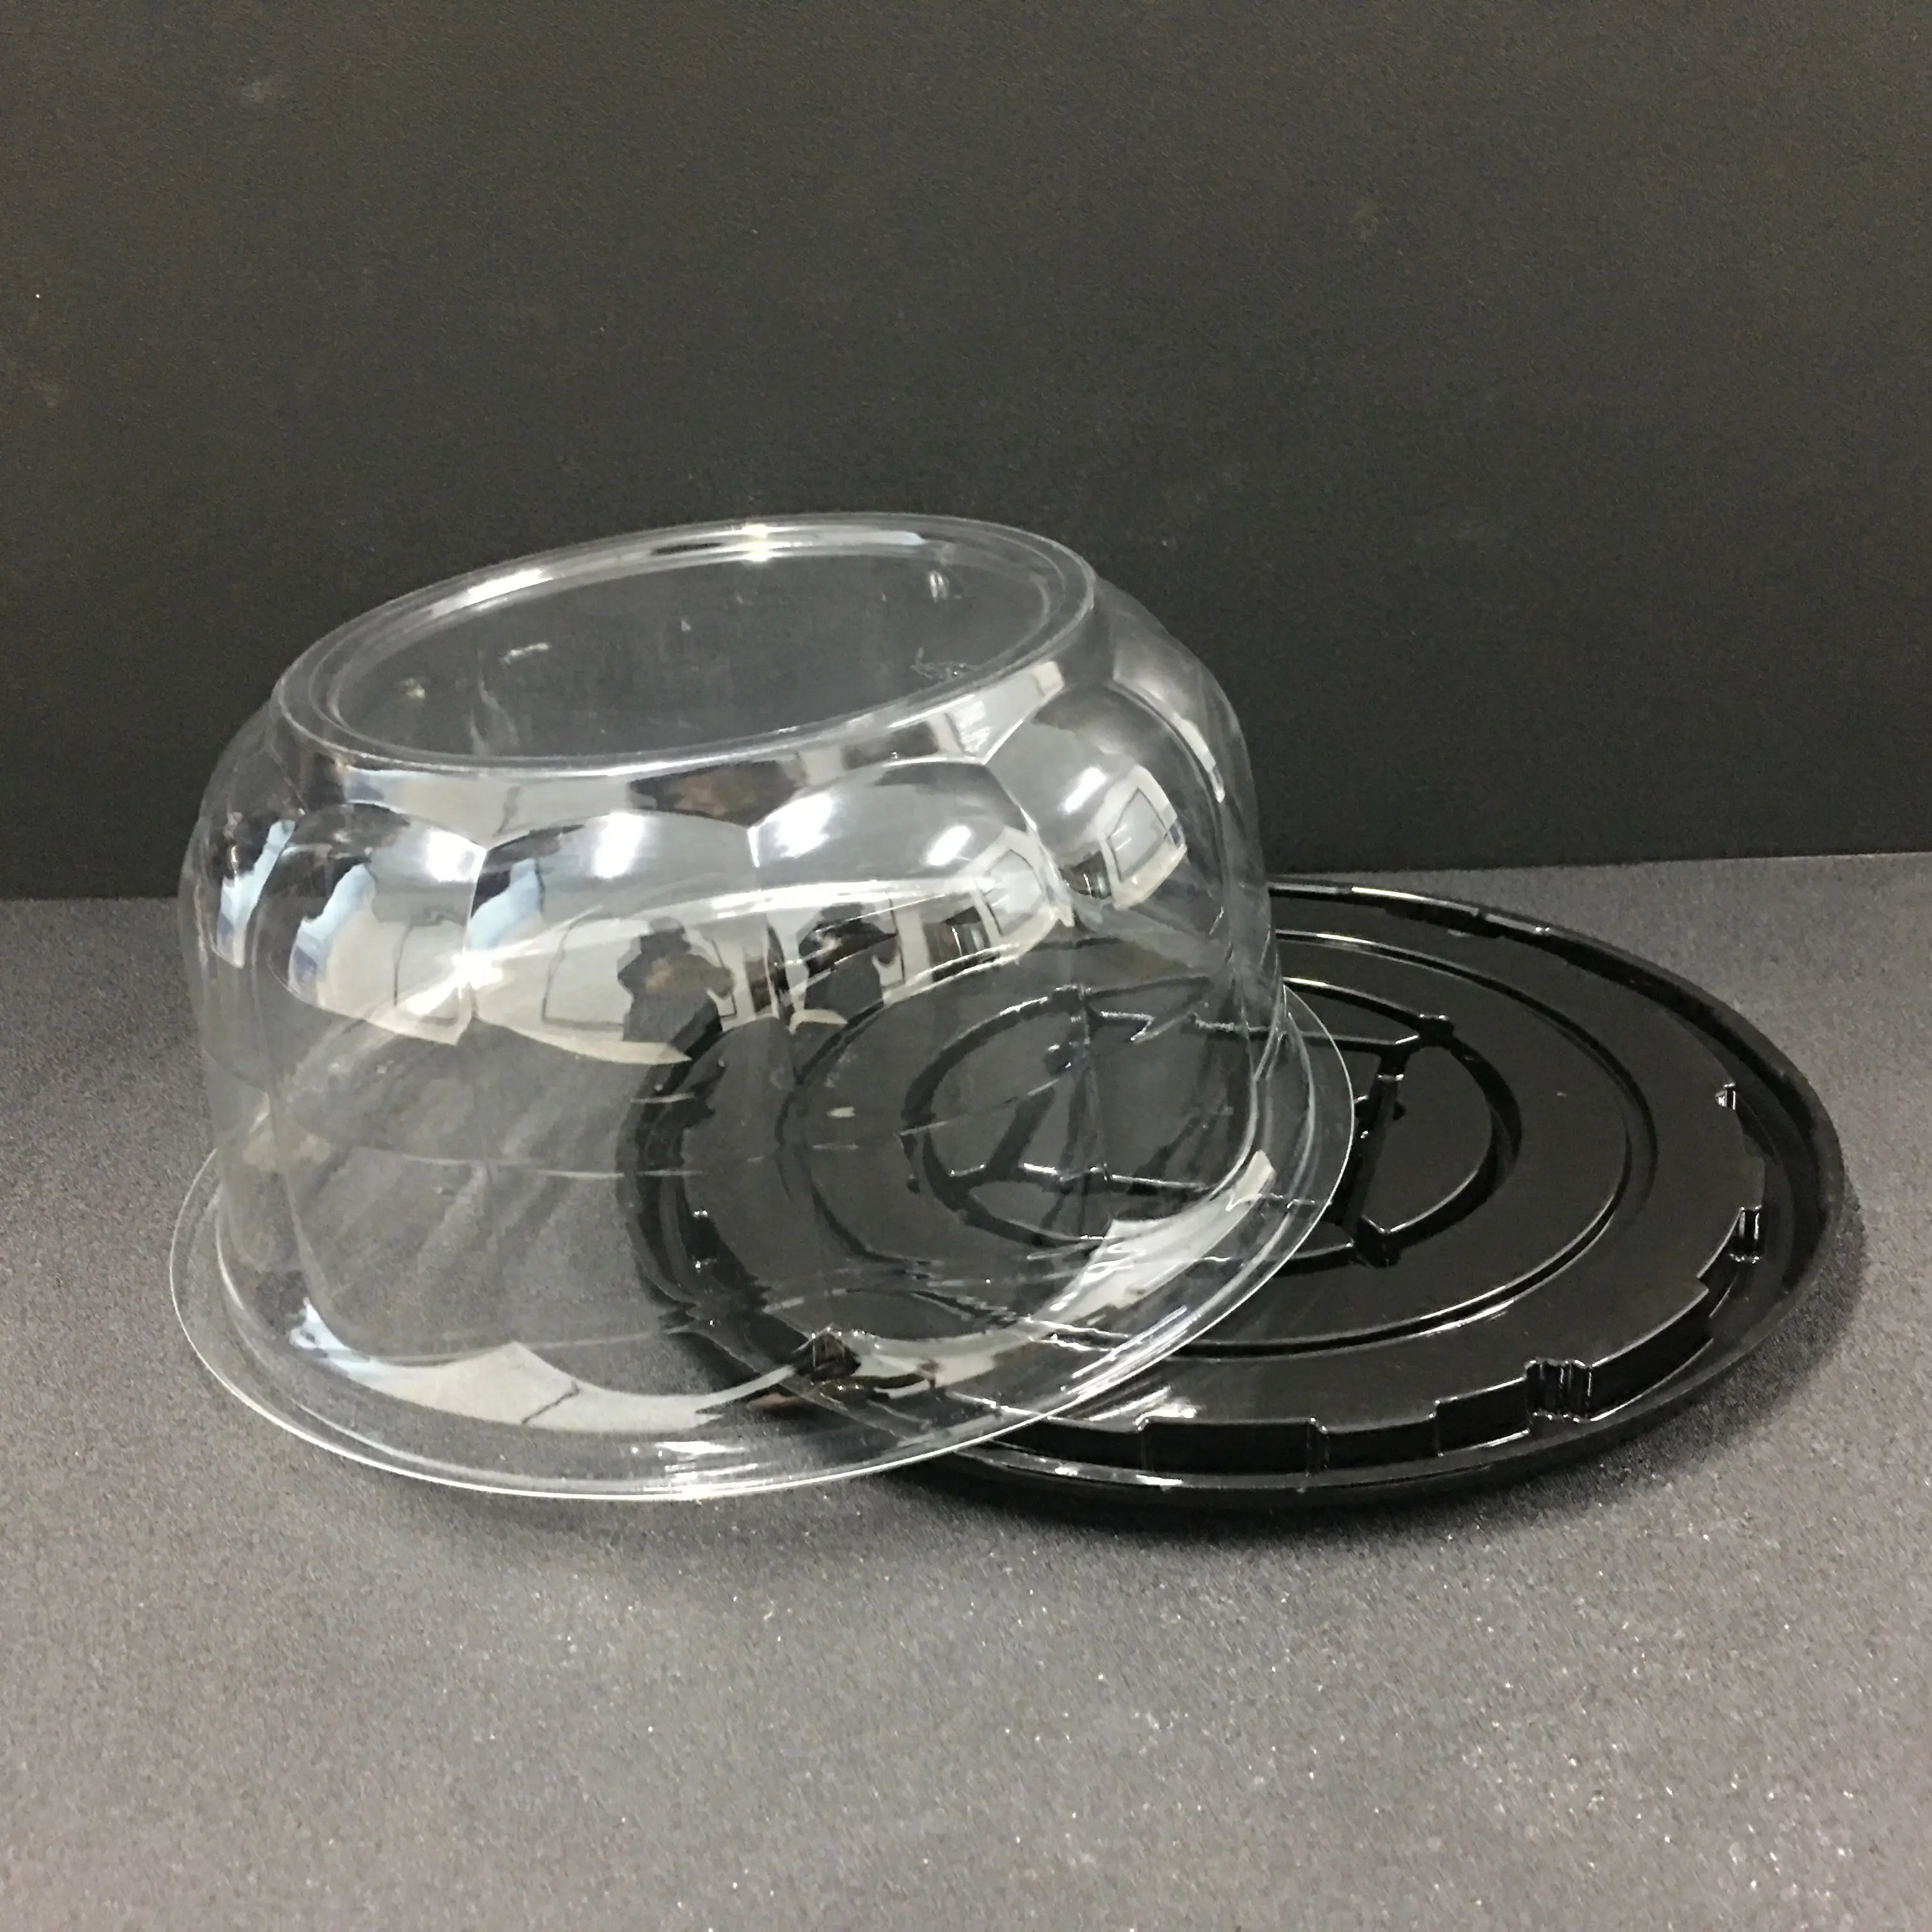 Base redonda e dome de plástico barato recipiente de bolo de casamento ou caixa